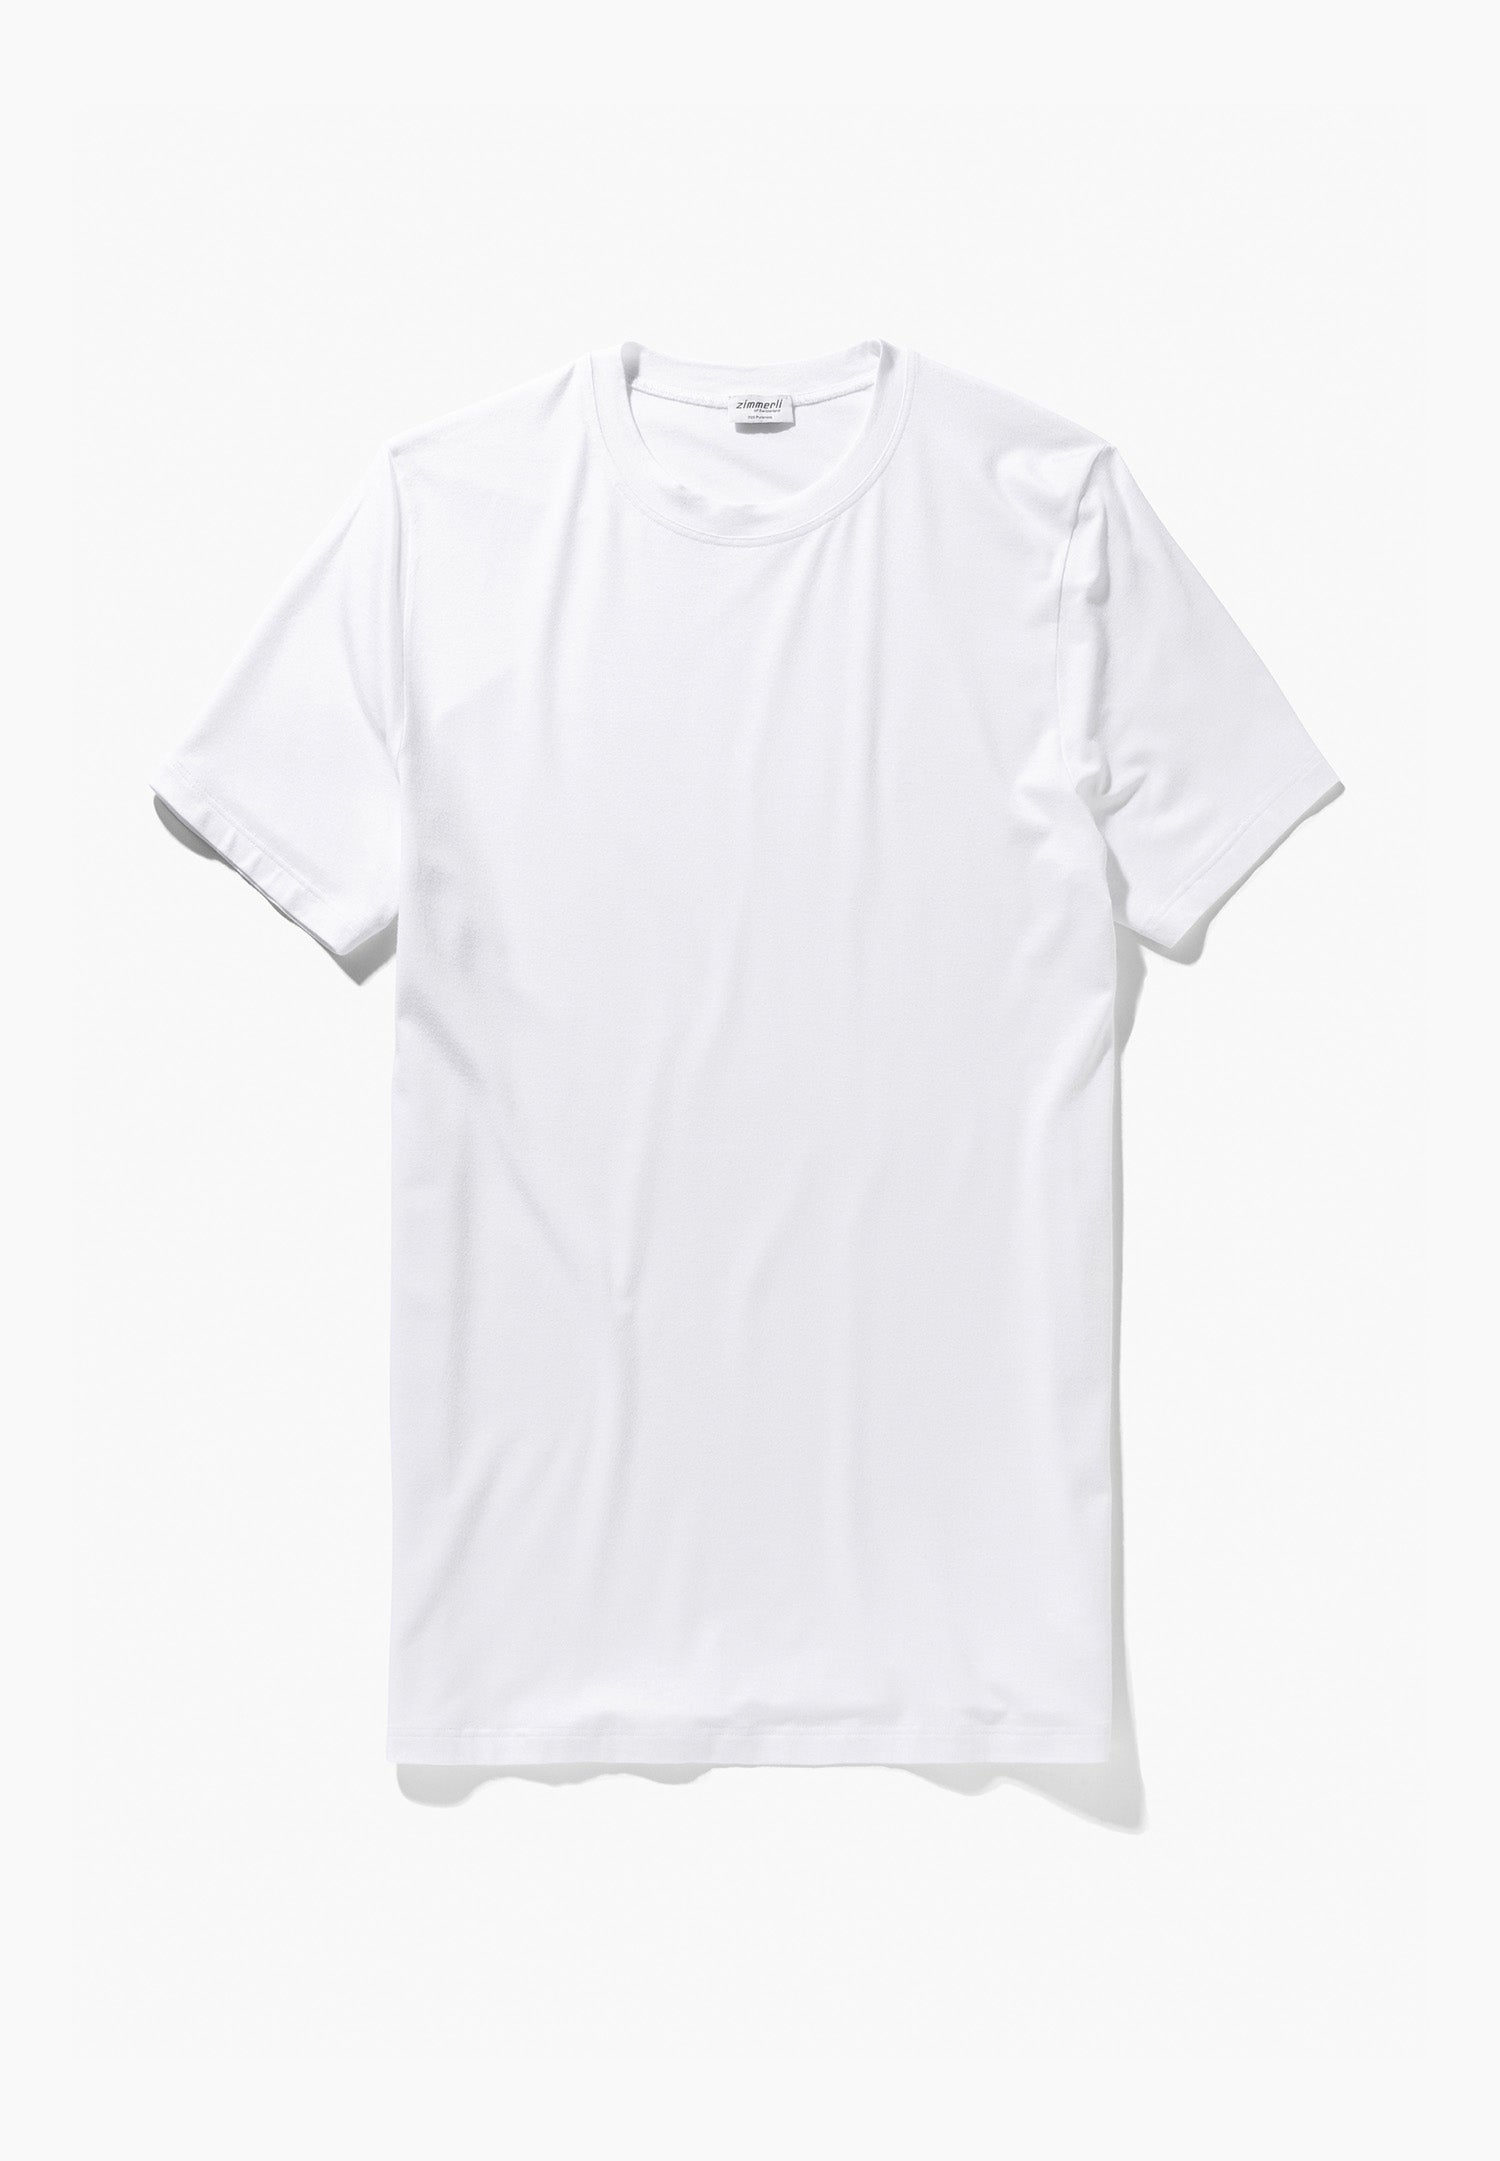 Pureness  T-Shirt Short Sleeve - white - Zimmerli of Switzerland